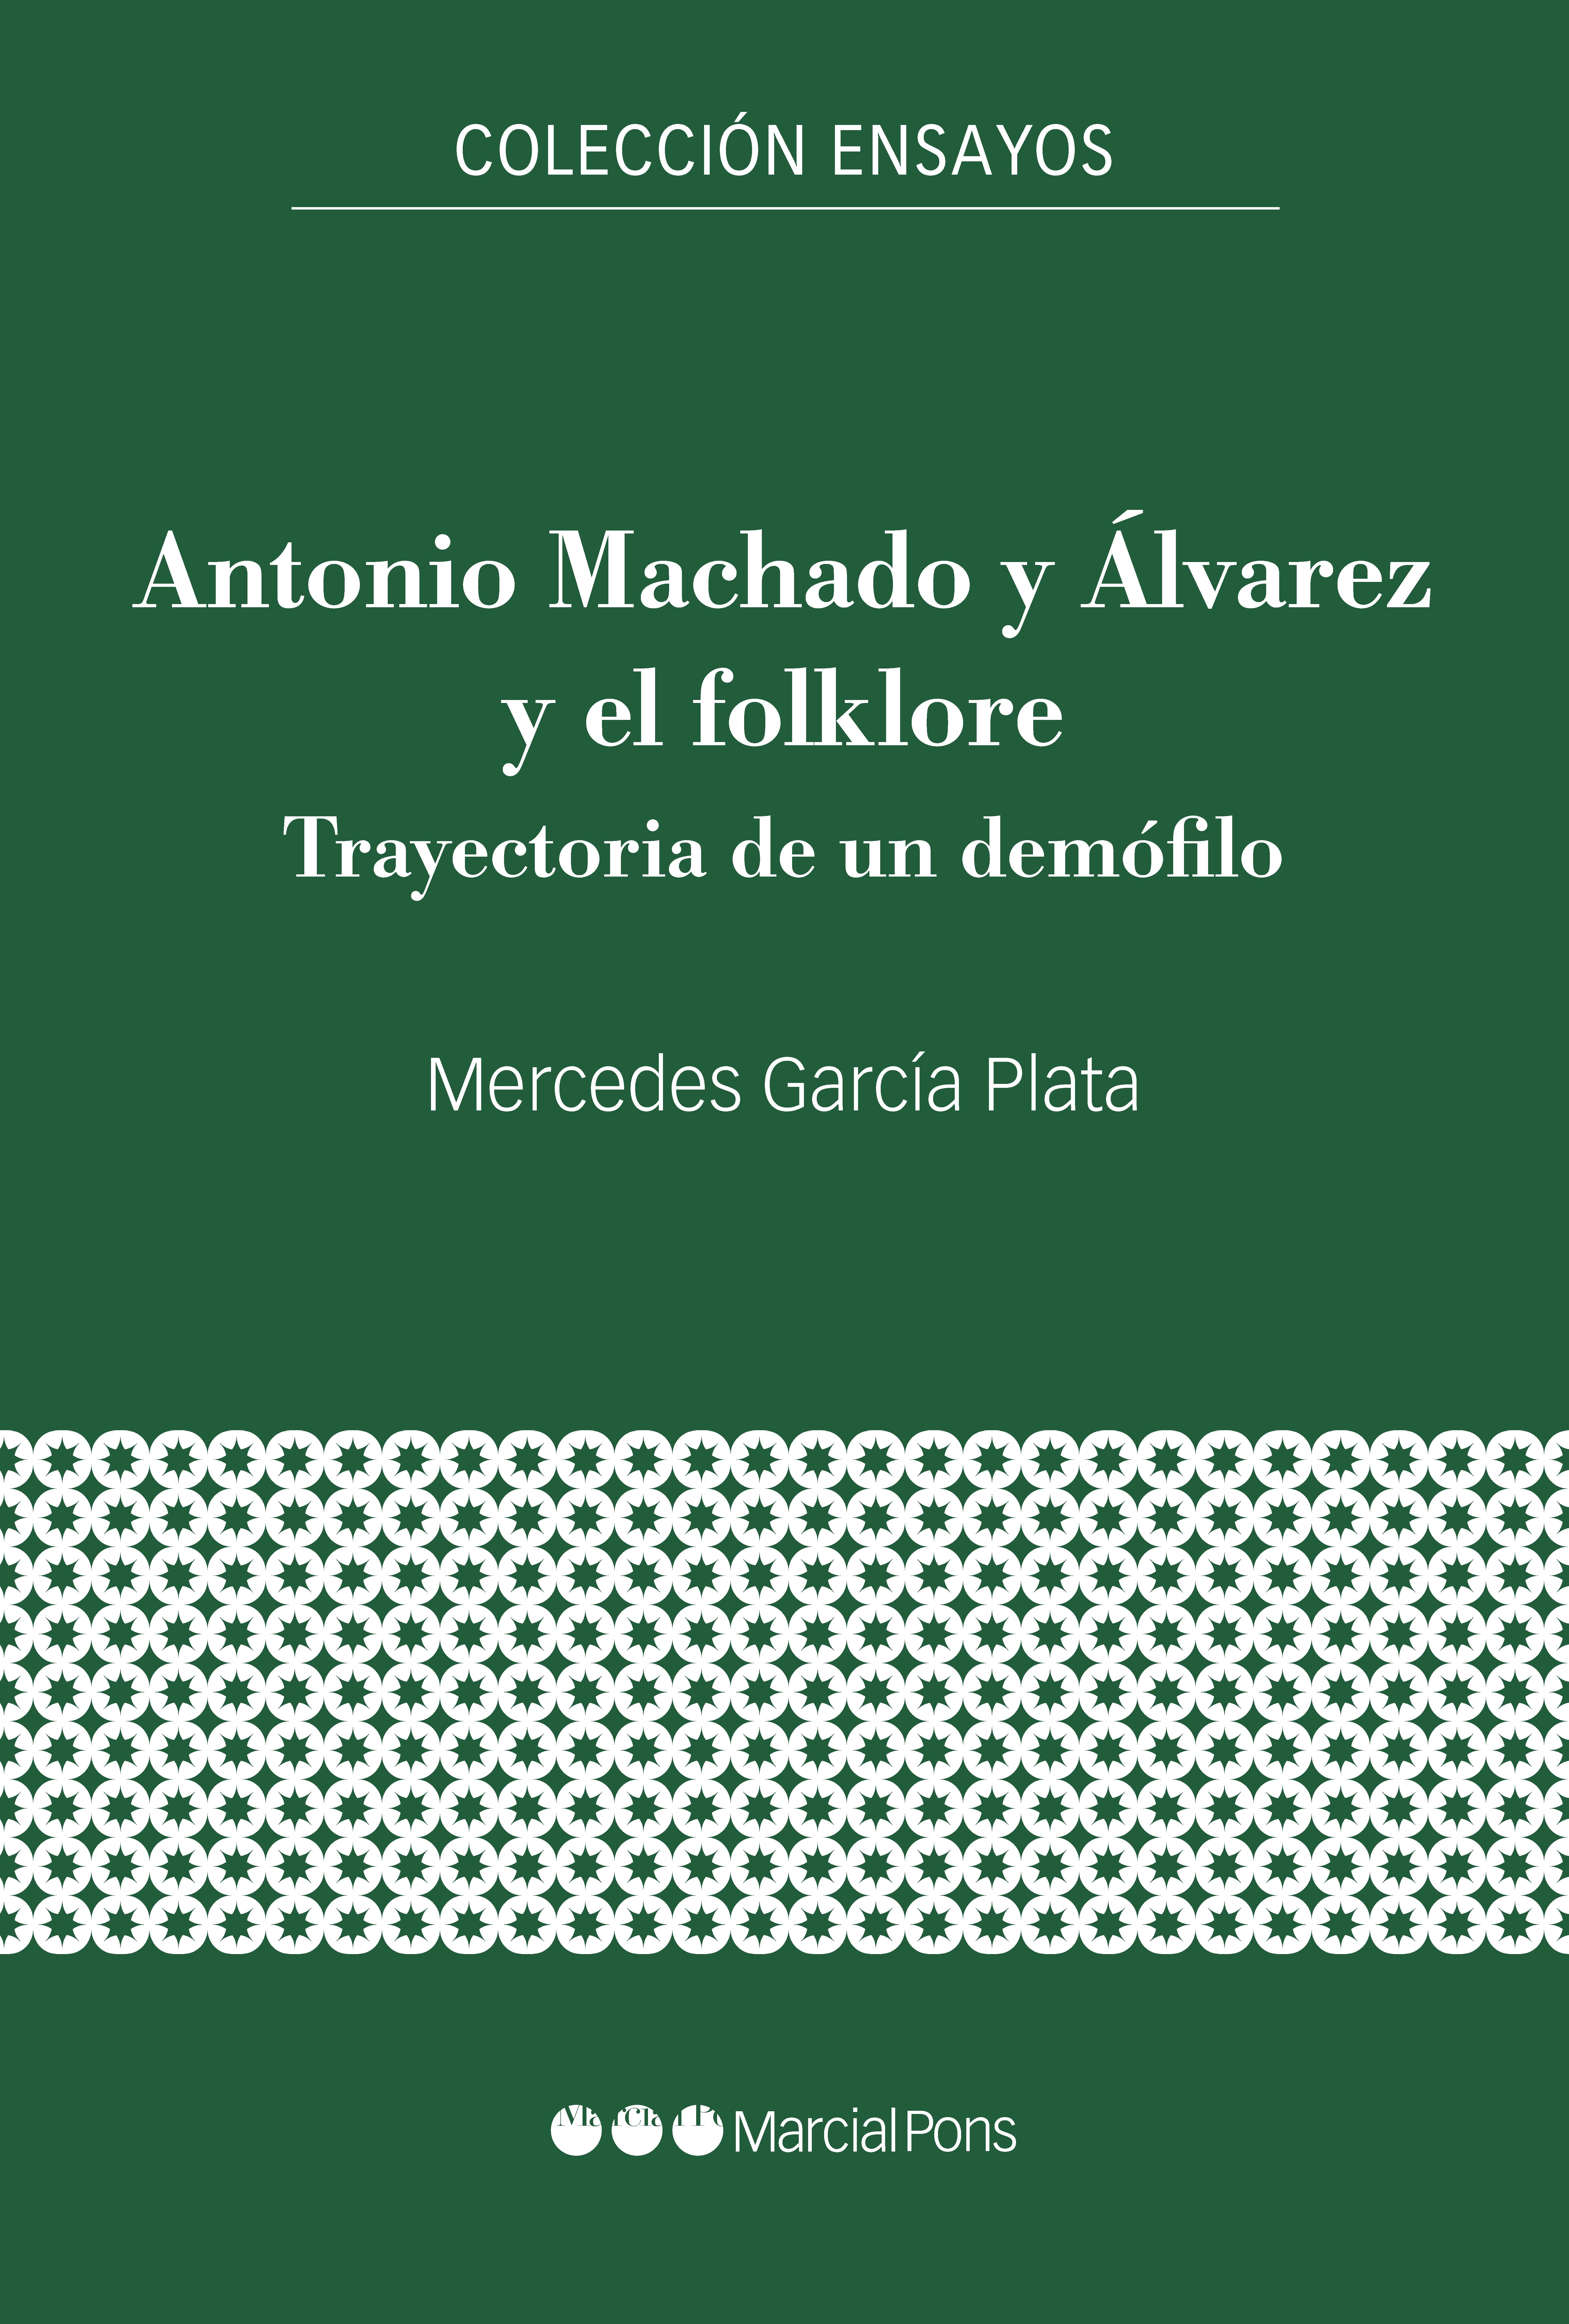 ANTONIO MACHADO Y ALVAREZ Y EL FOLKLORE "TRAYECTORIA DE UN DEMOFILO"